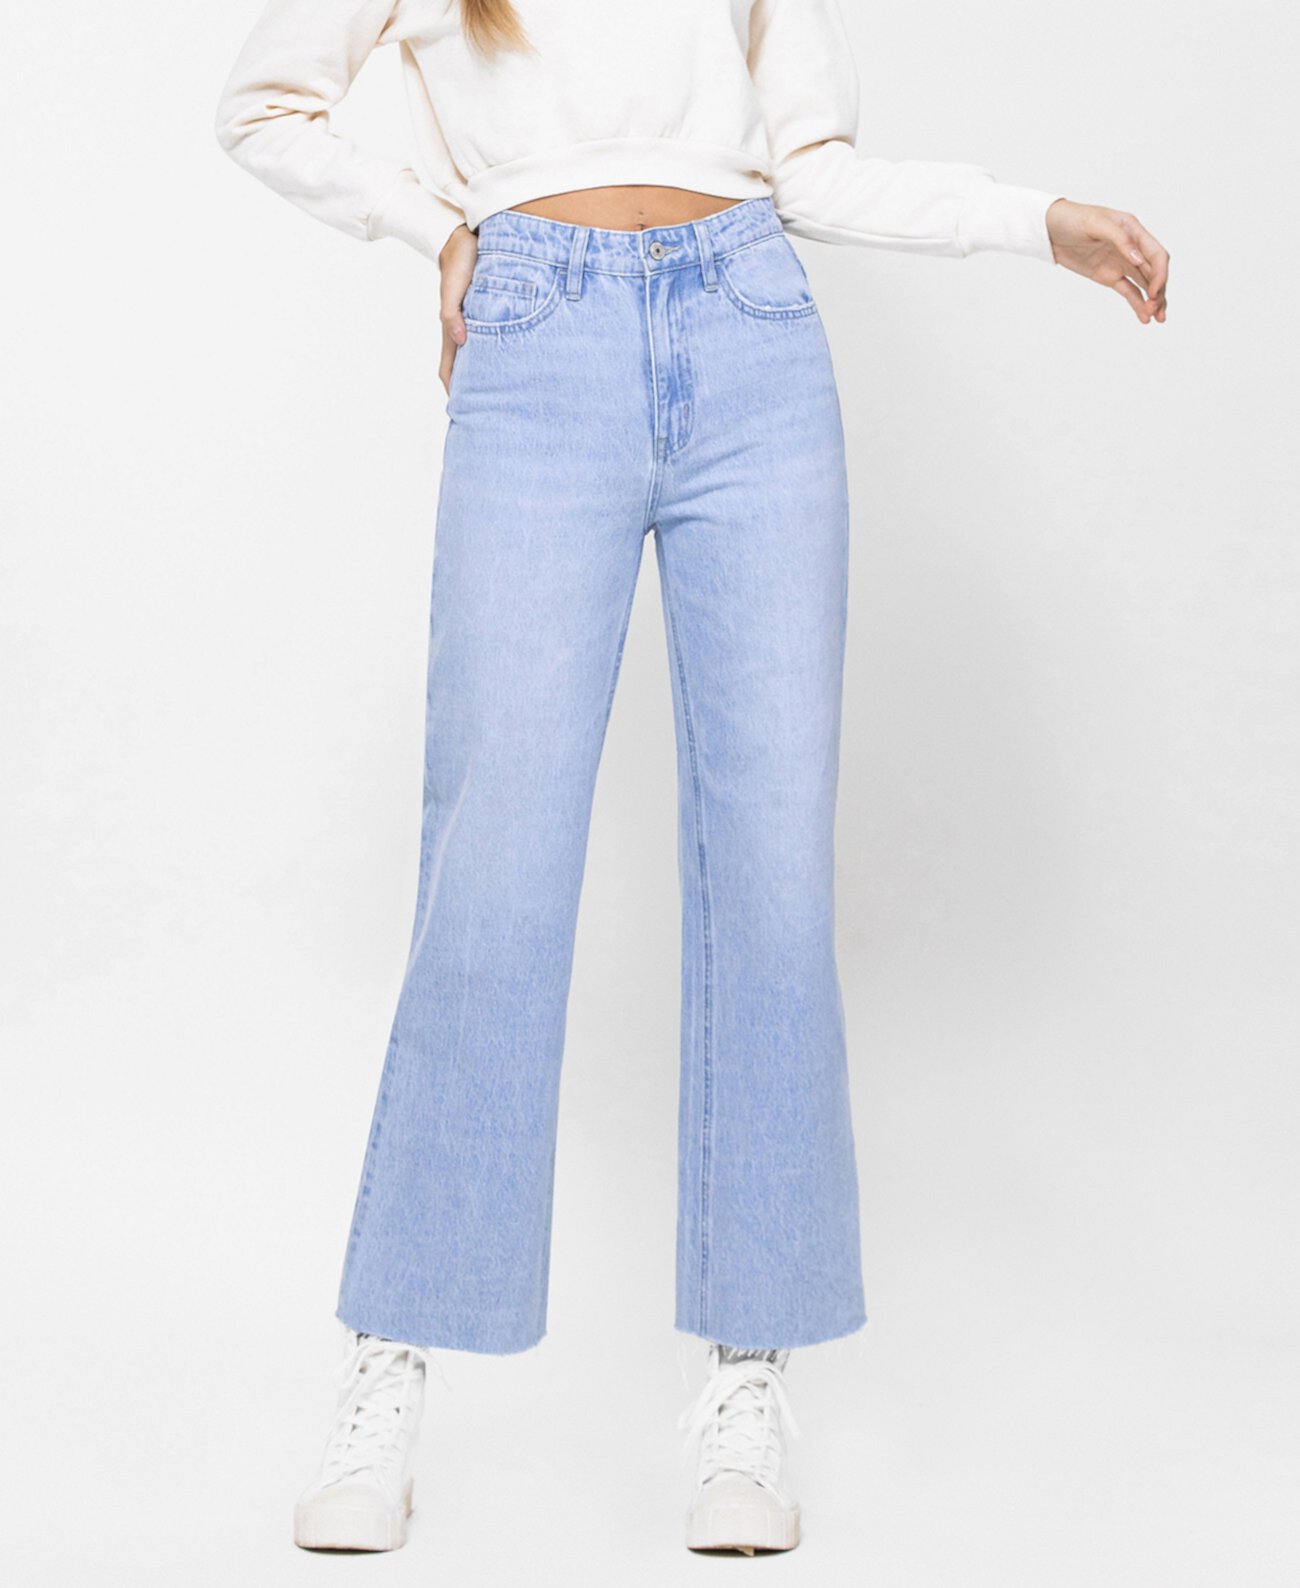 Женские прямые джинсы с высокой посадкой до щиколотки в стиле 90-х годов VERVET